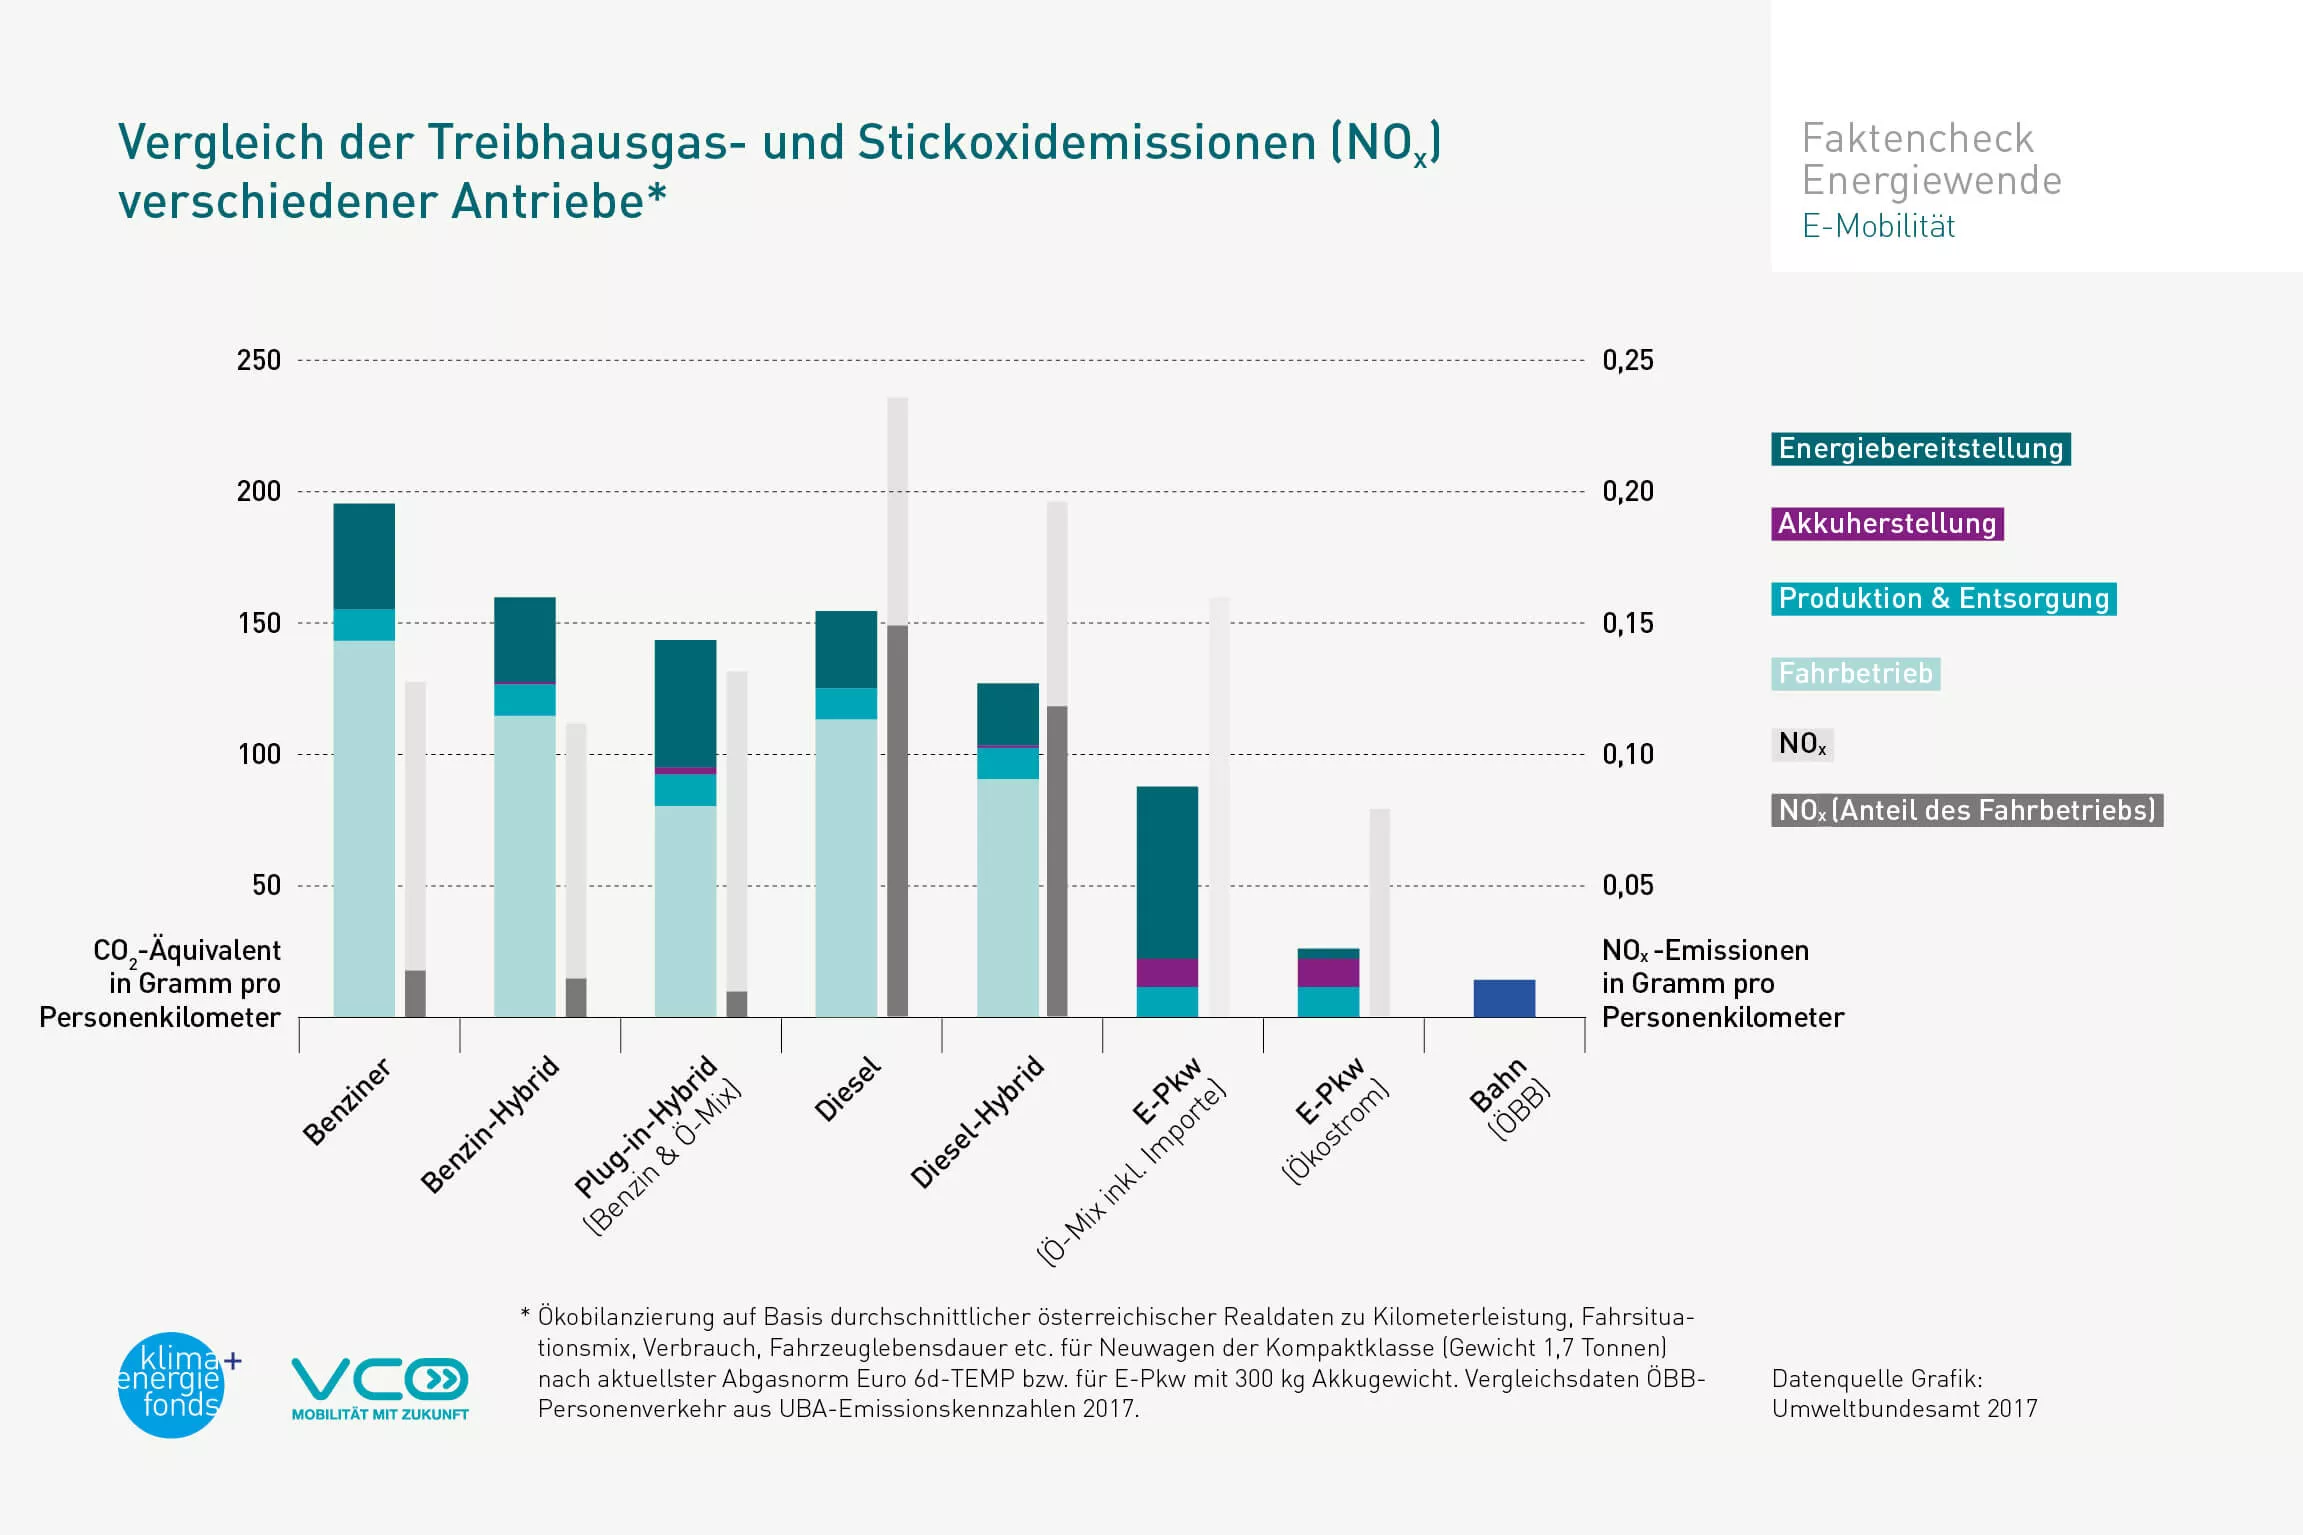 Vergleich der Treibhausgas- und Stickoxidemissionen verschiedener Antriebe (Grafik)